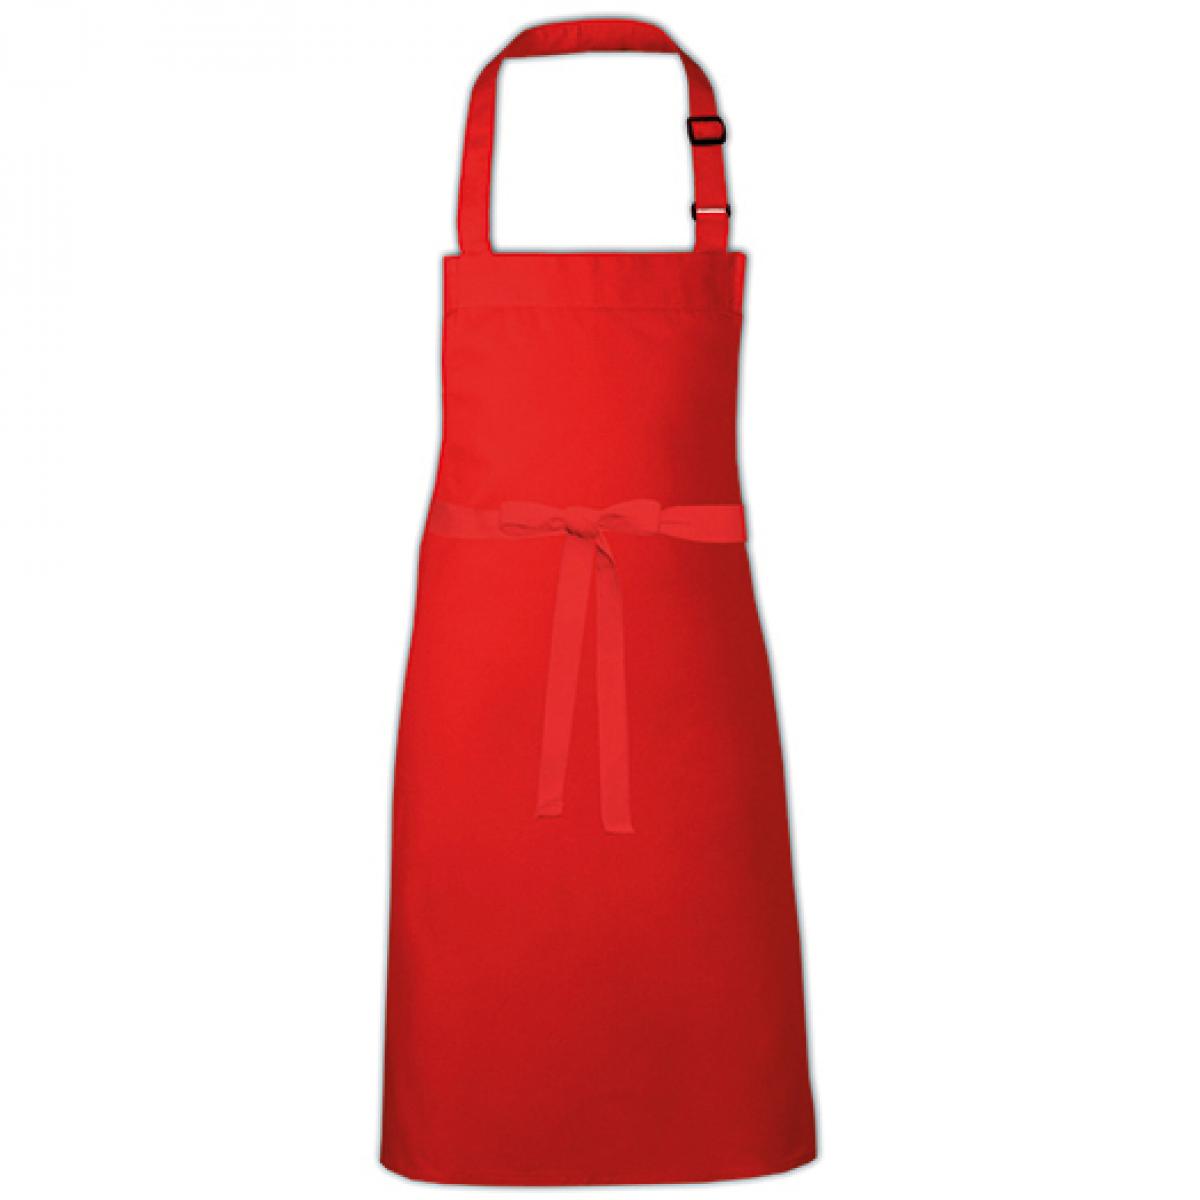 Hersteller: Link Kitchen Wear Herstellernummer: BBQ9073ADJ Artikelbezeichnung: Barbecue Apron adjustable 73 x 90 cm -  Waschbar bis 60 °C Farbe: Red